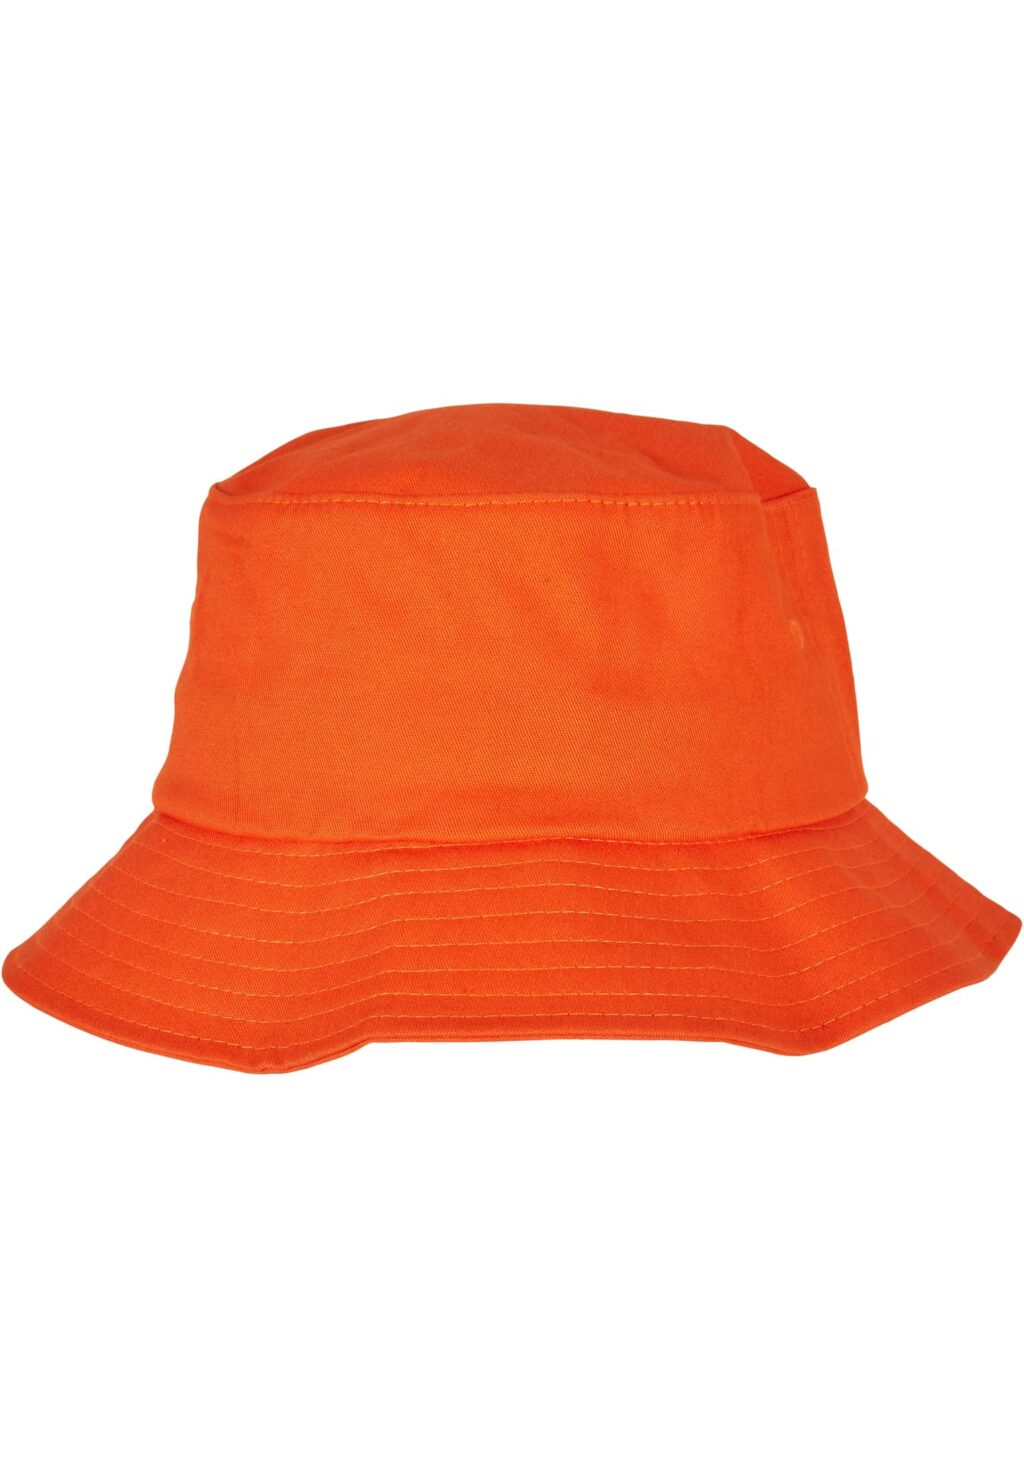 Apollo Bucket Hat orange one MT2275